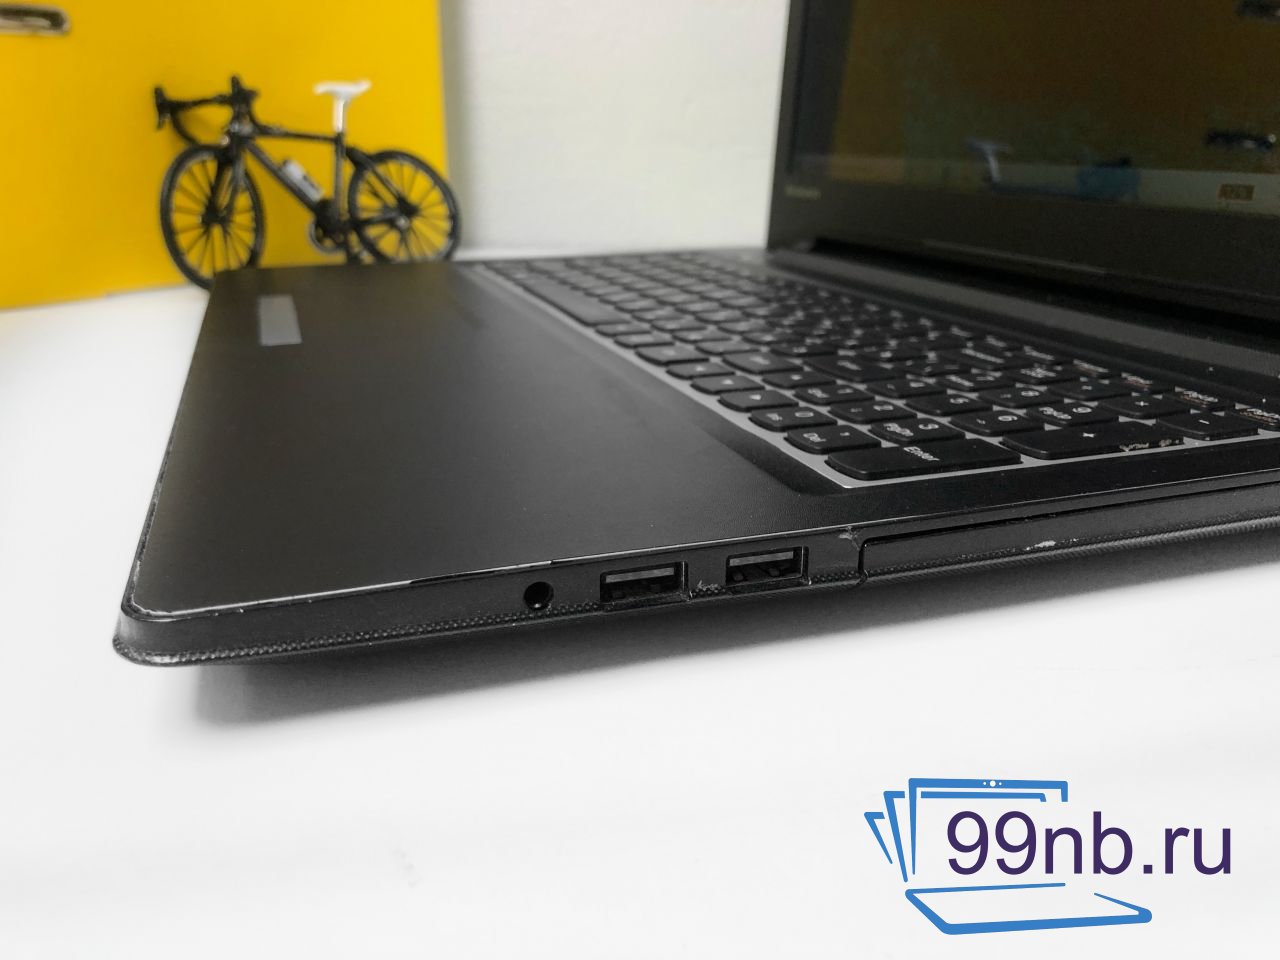  Ноутбук Lenovo для работы i5+Radeon+SSD